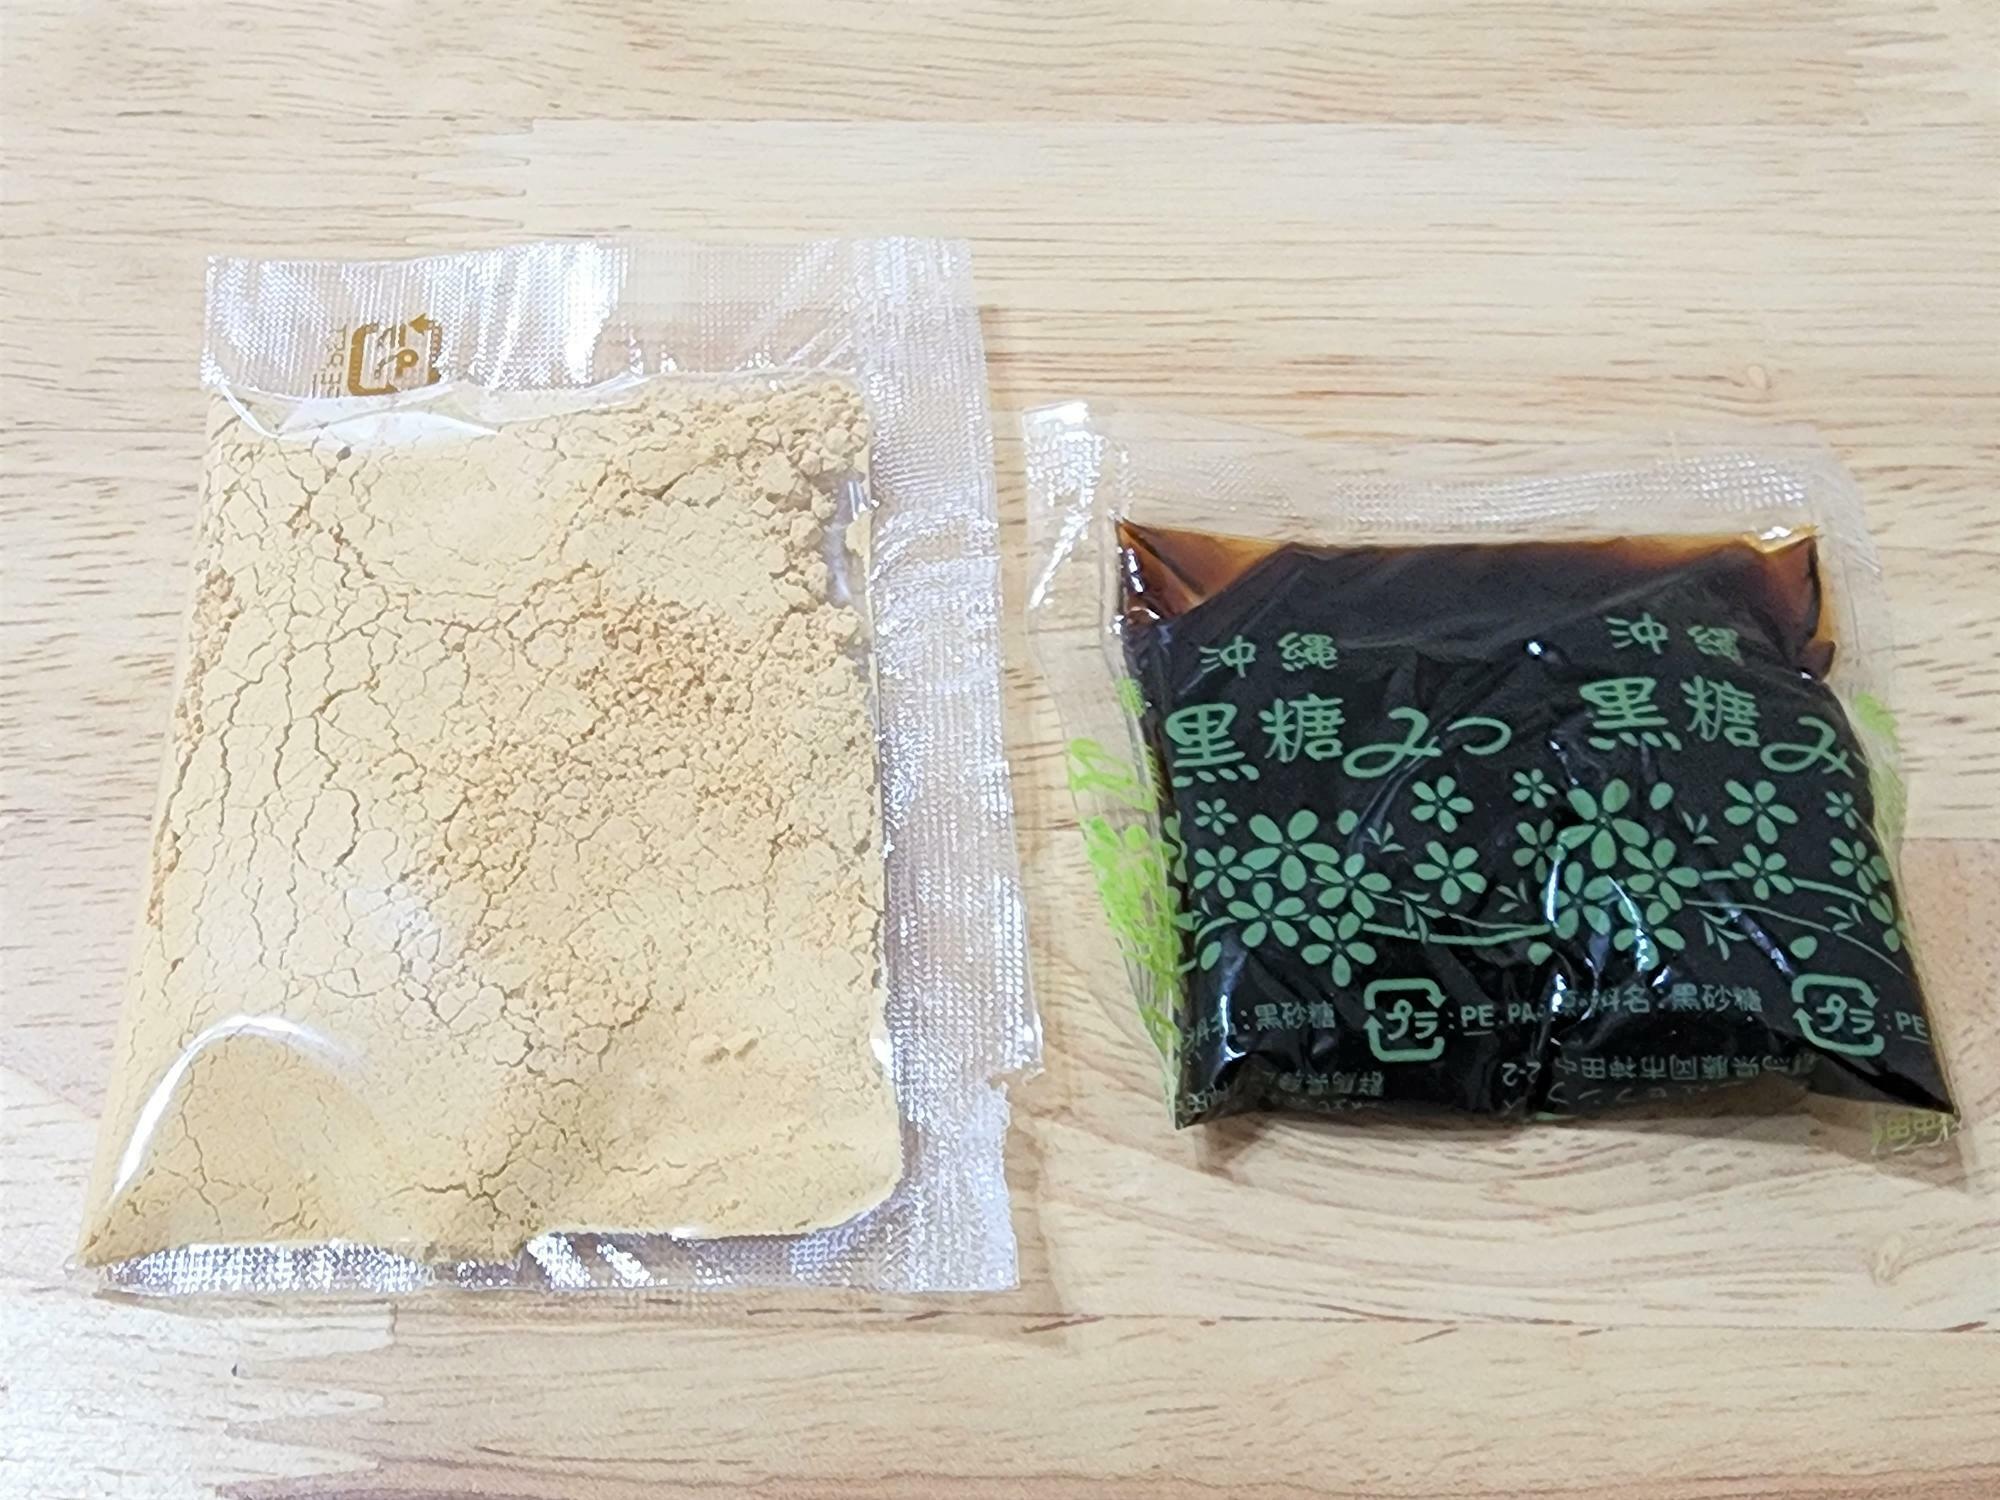 「京都利休の生わらび餅」の国産大豆を使用したきな粉と沖縄産サトウキビから作られた黒蜜。